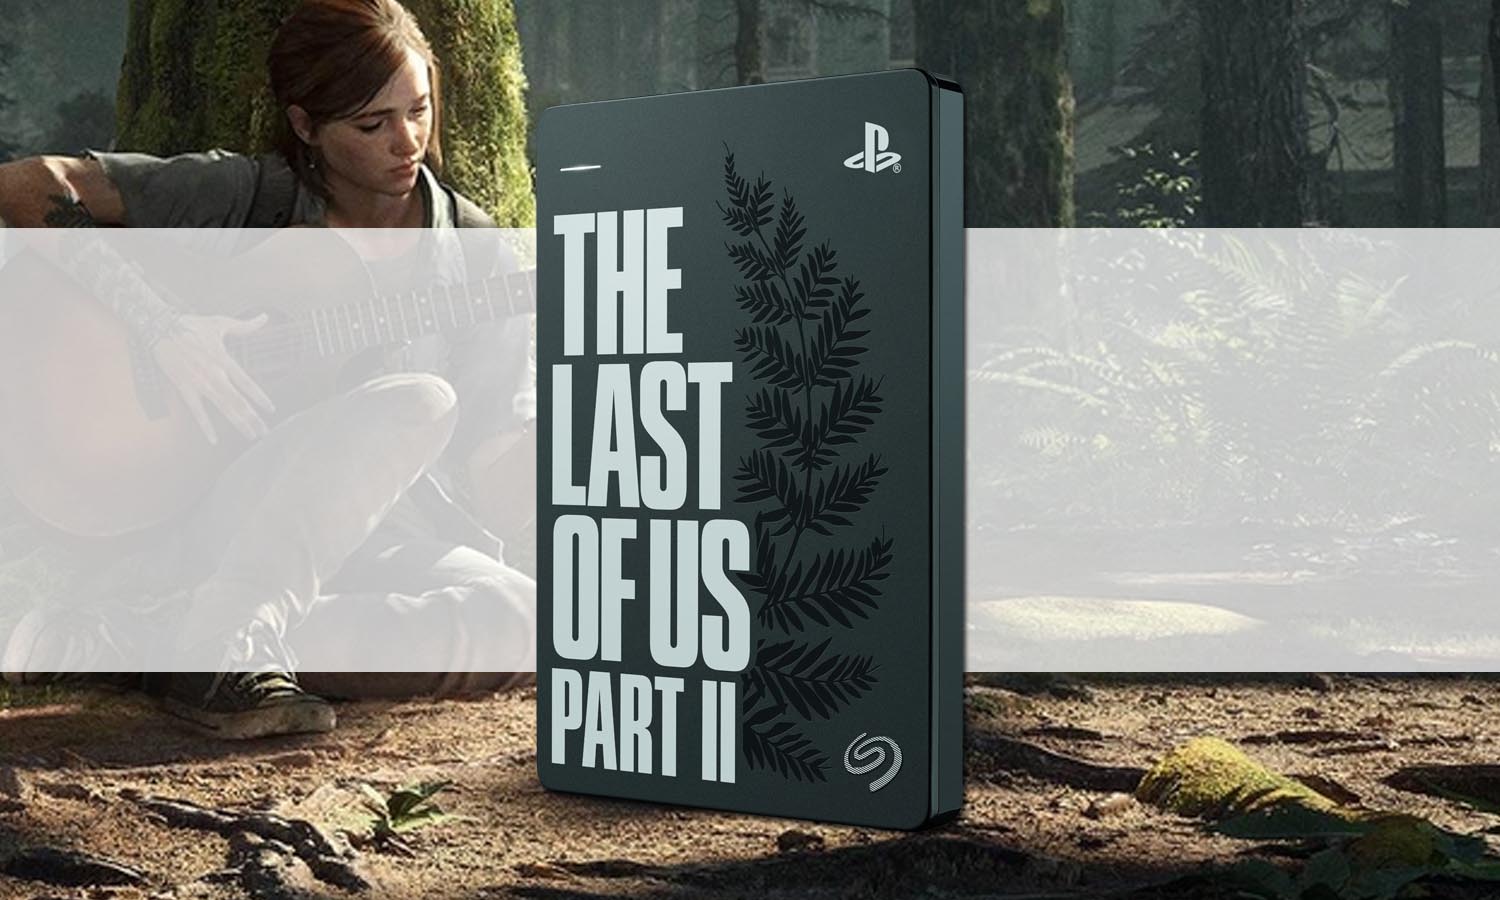 Disque dur SSD PlayStation édition limitée Last of Us Part II